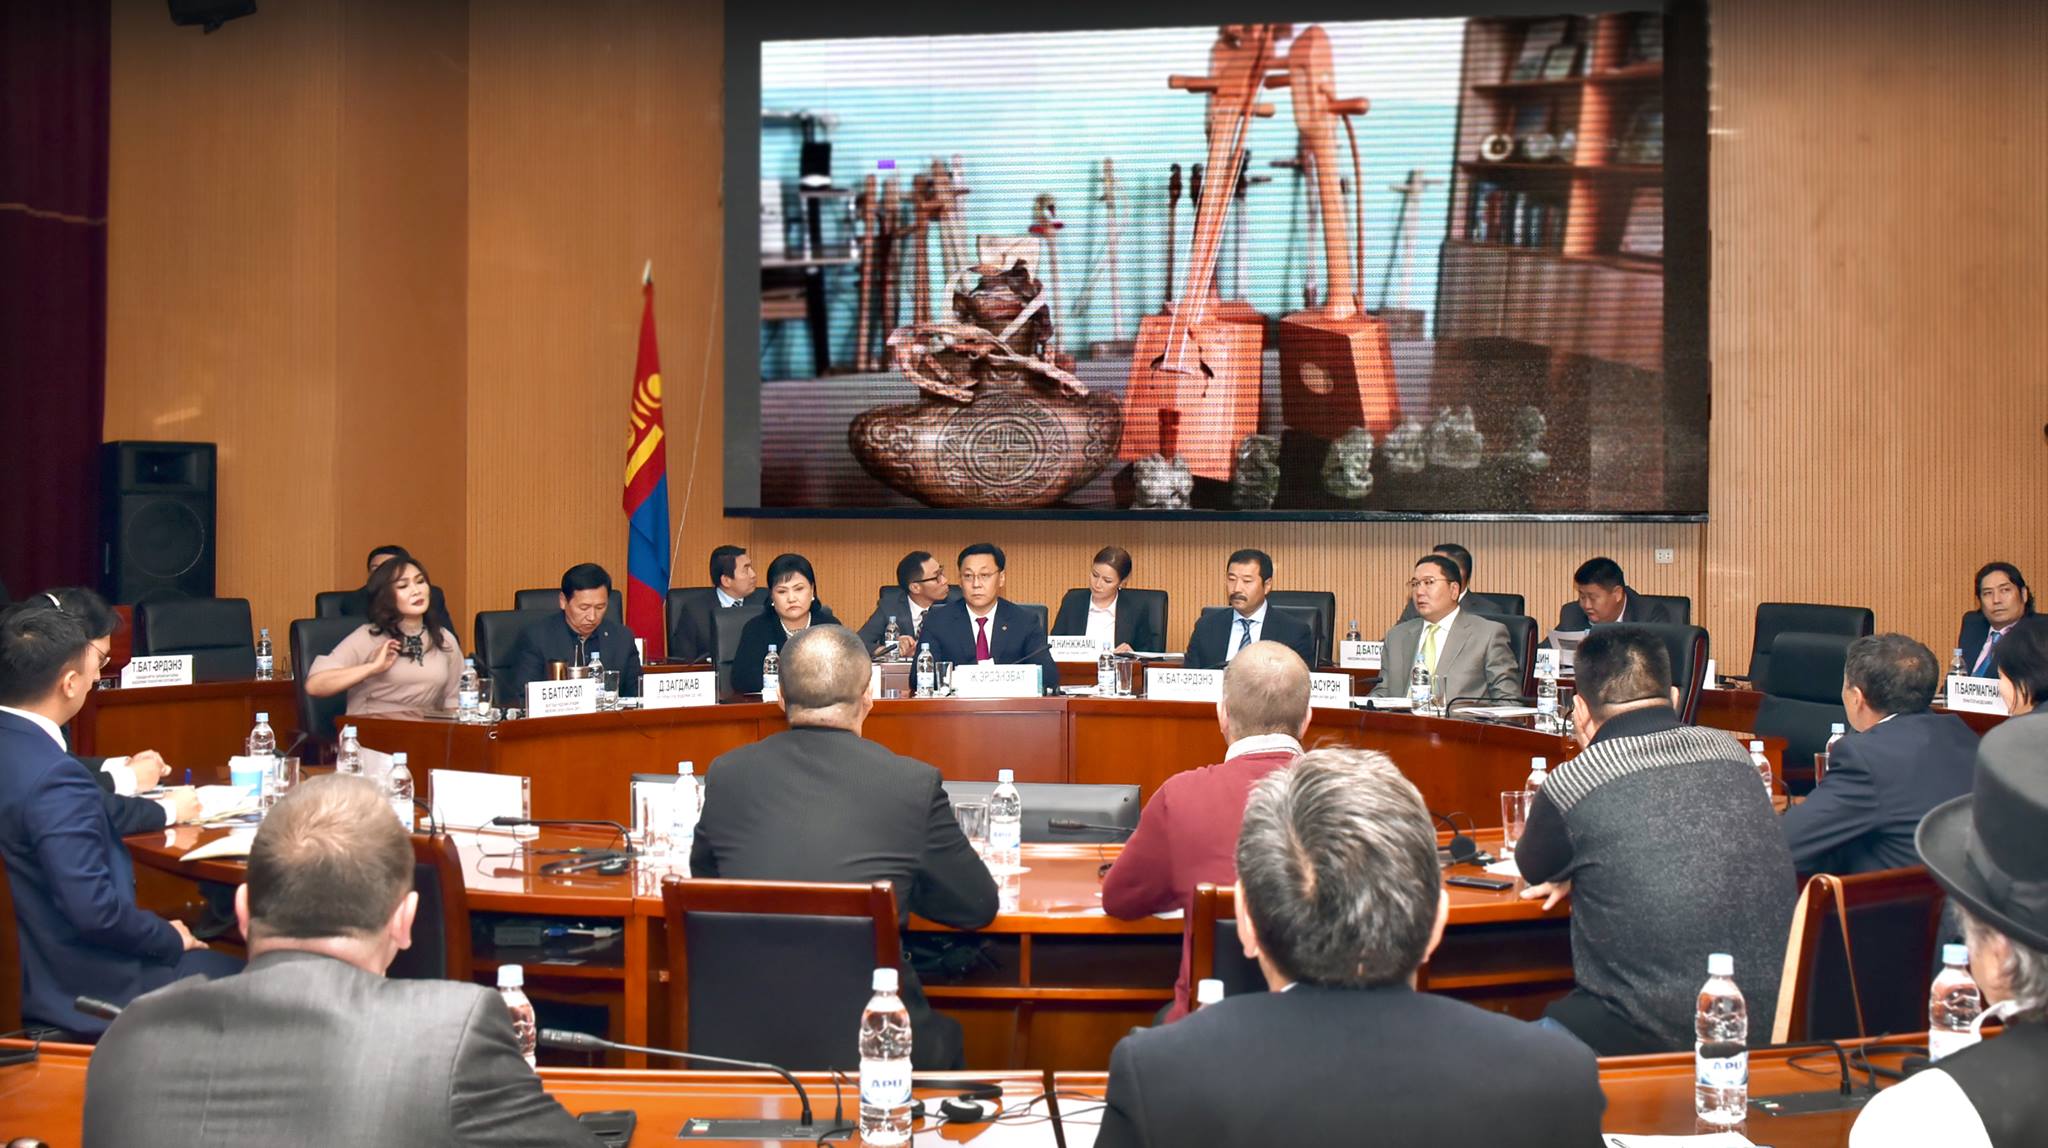 Ж.Эрдэнэбат: Эрсдэлийг боломж болгоход Монголын үндэсний брэндийн зөвлөл томоохон үүрэгтэй